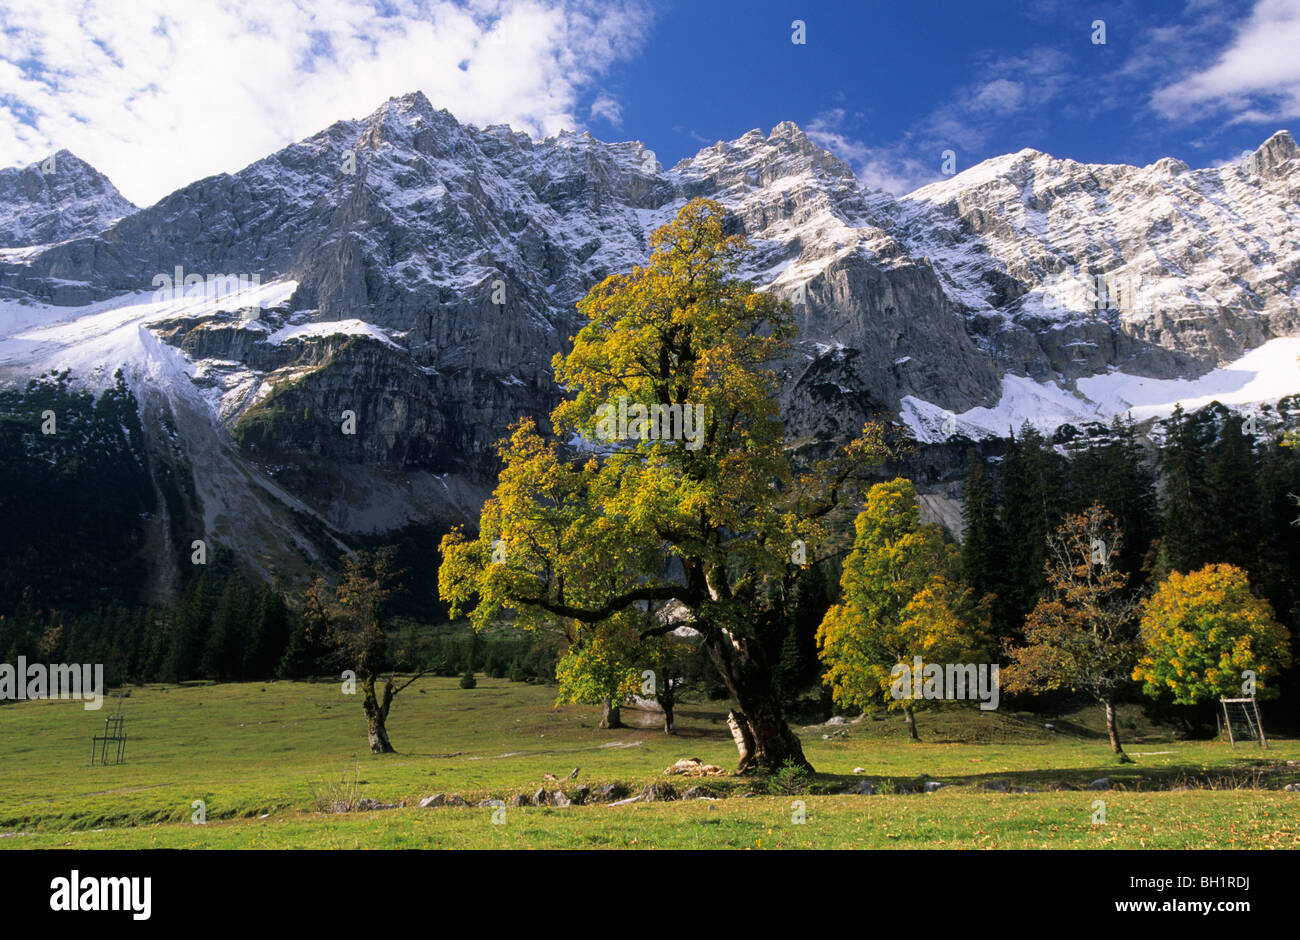 Ahornbäume im Herbst Farben, schneebedeckten Gipfel der Rauhkarlspitze und  Kaltwasserkarspitze im Hintergrund, Kleiner Ahornboden, K Stockfotografie -  Alamy